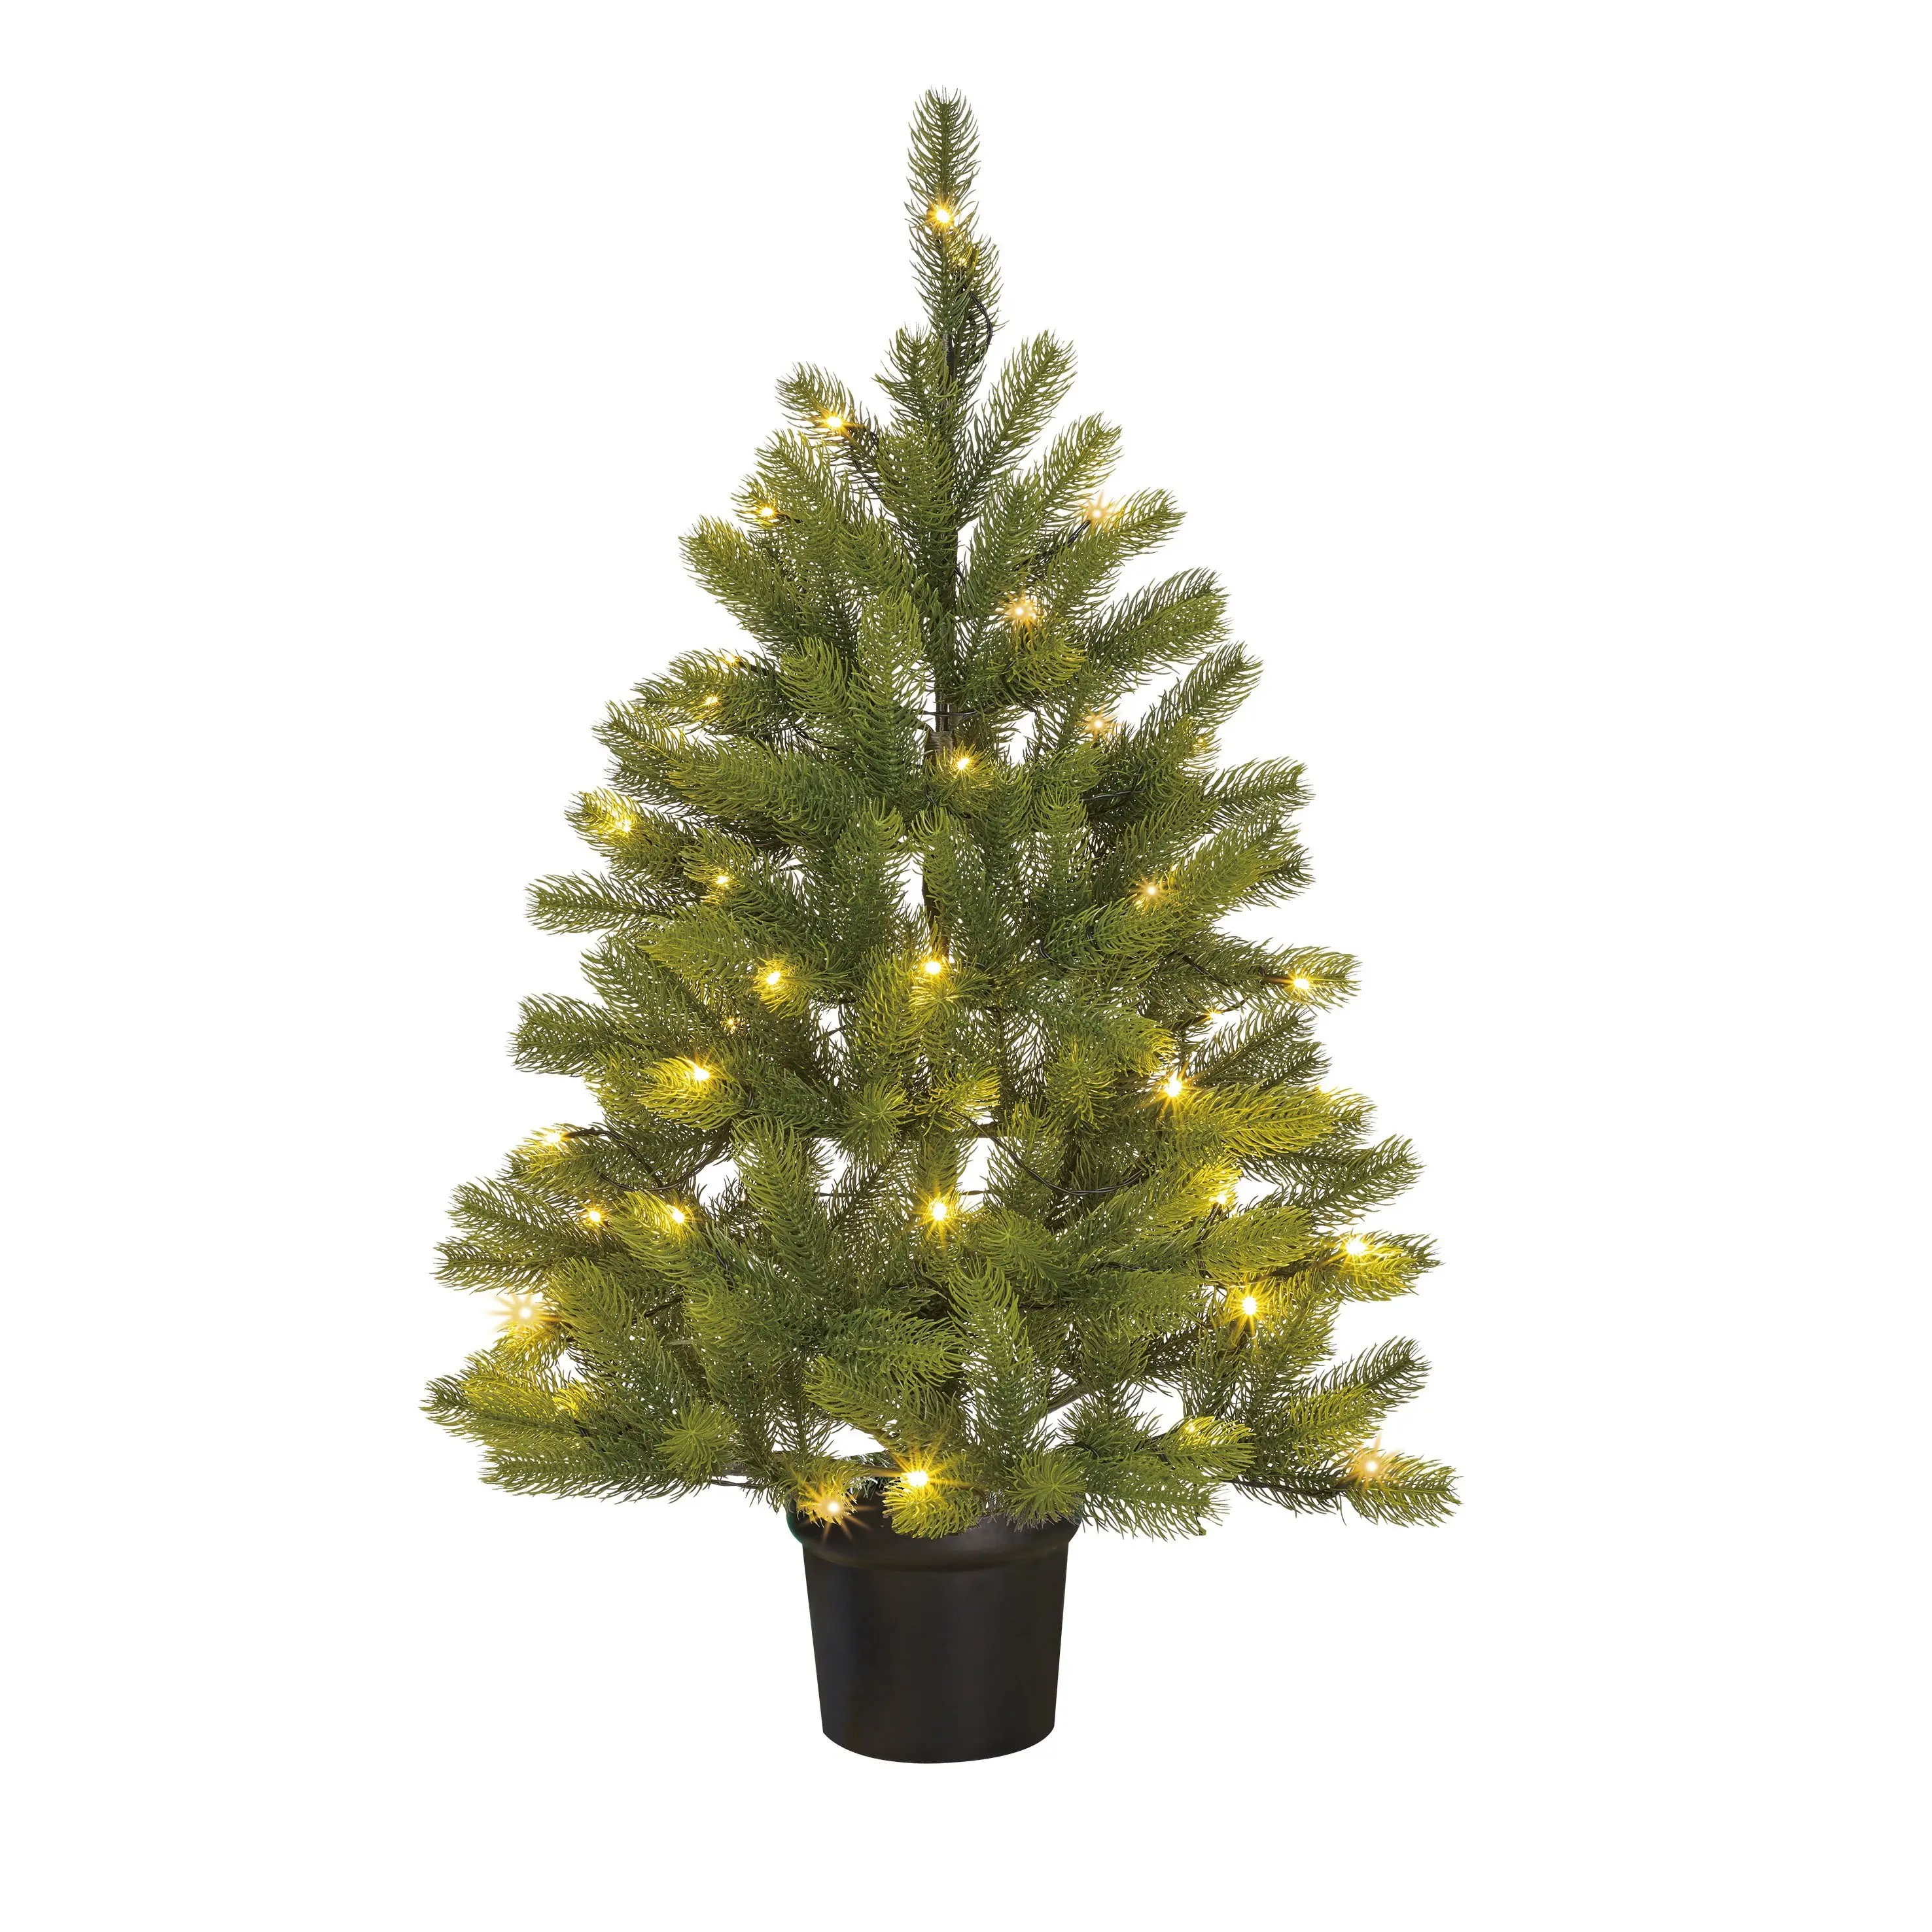 K眉nstlicher Weihnachtsbaum Nigata | Weihnachtsbäume